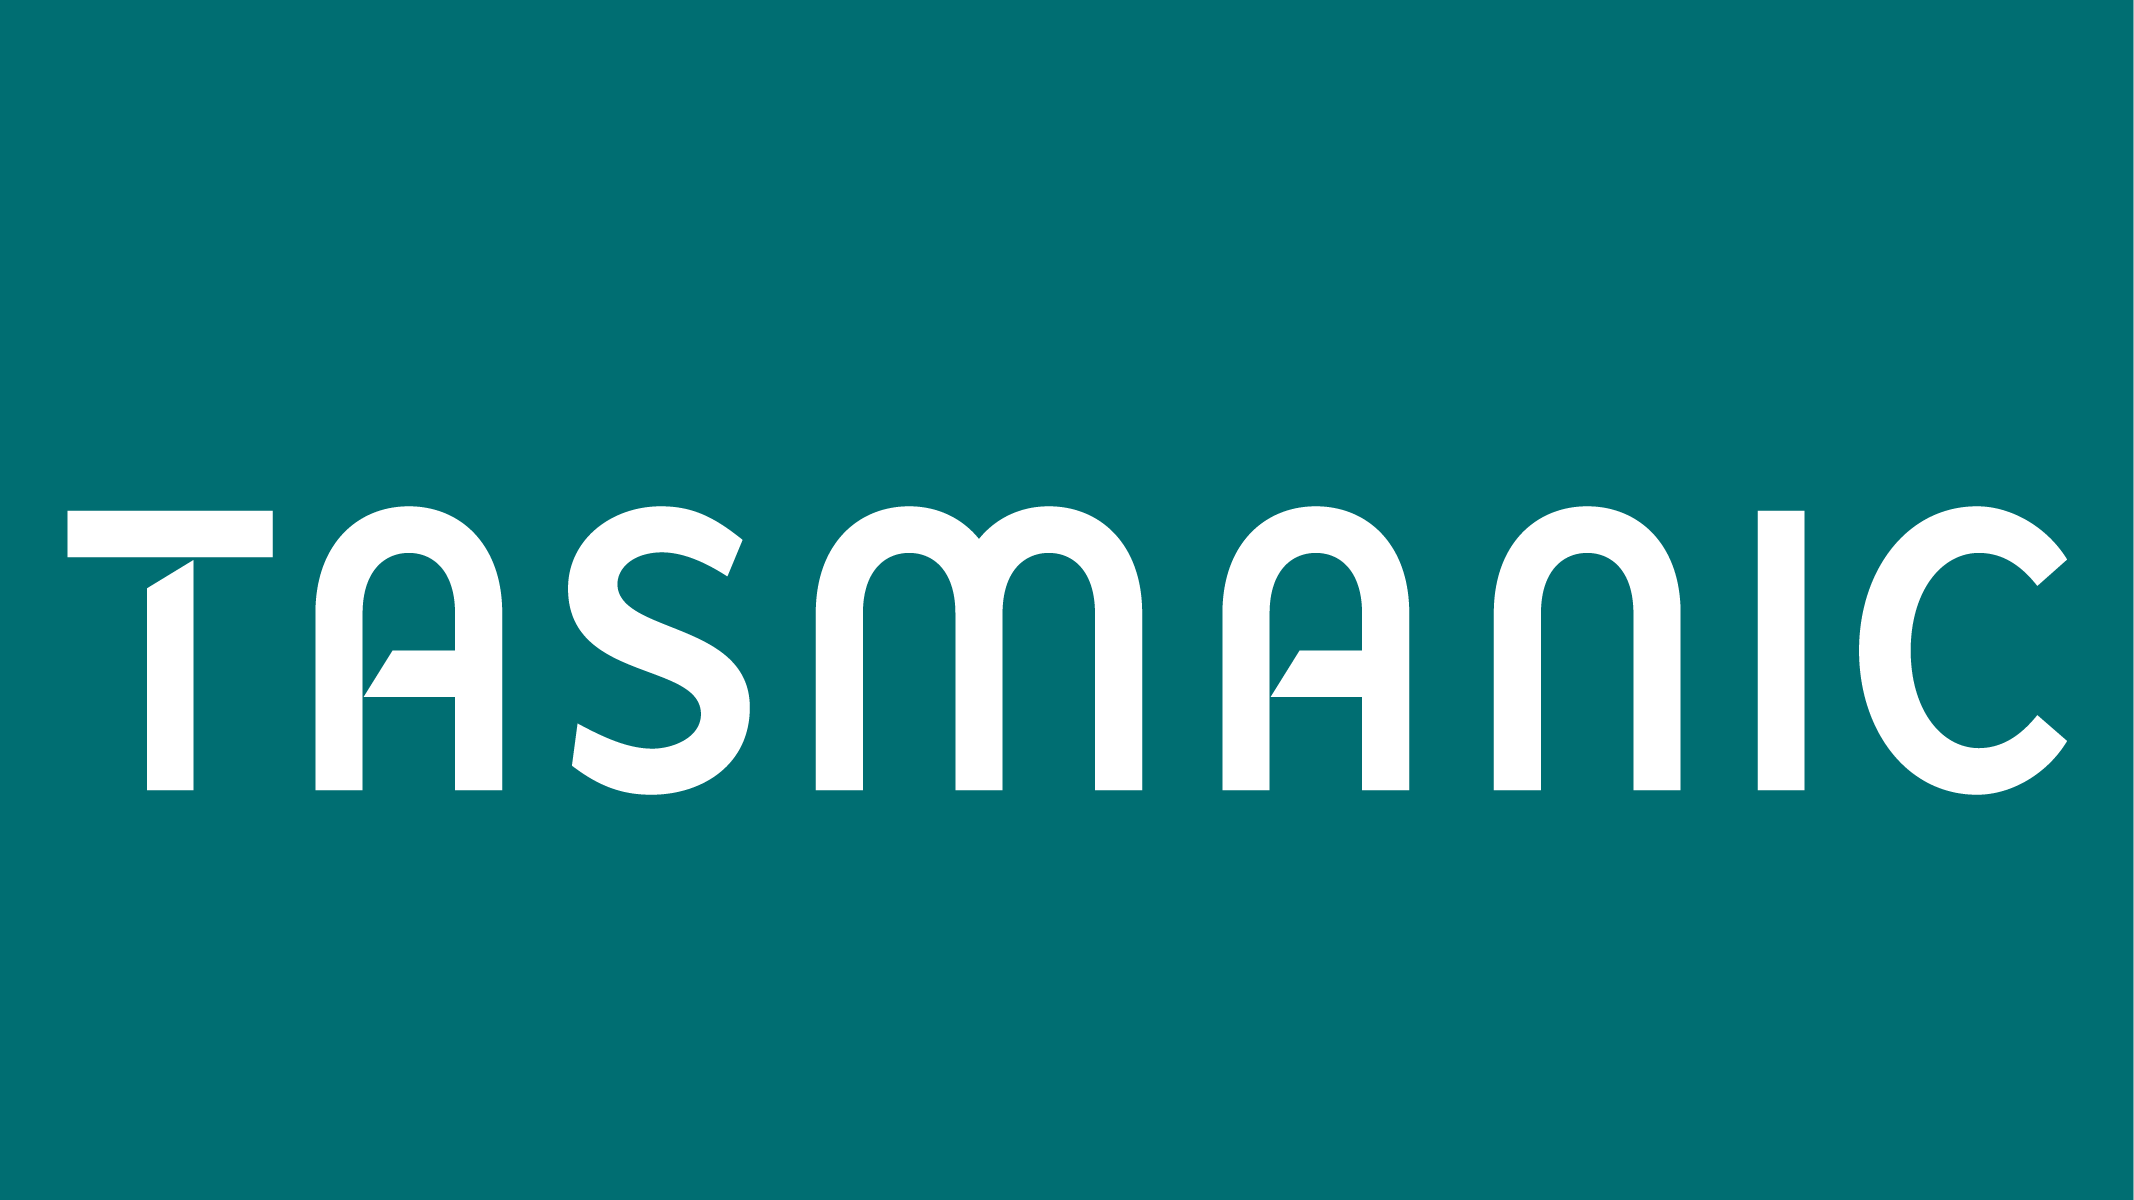 塔斯马尼亚徽标